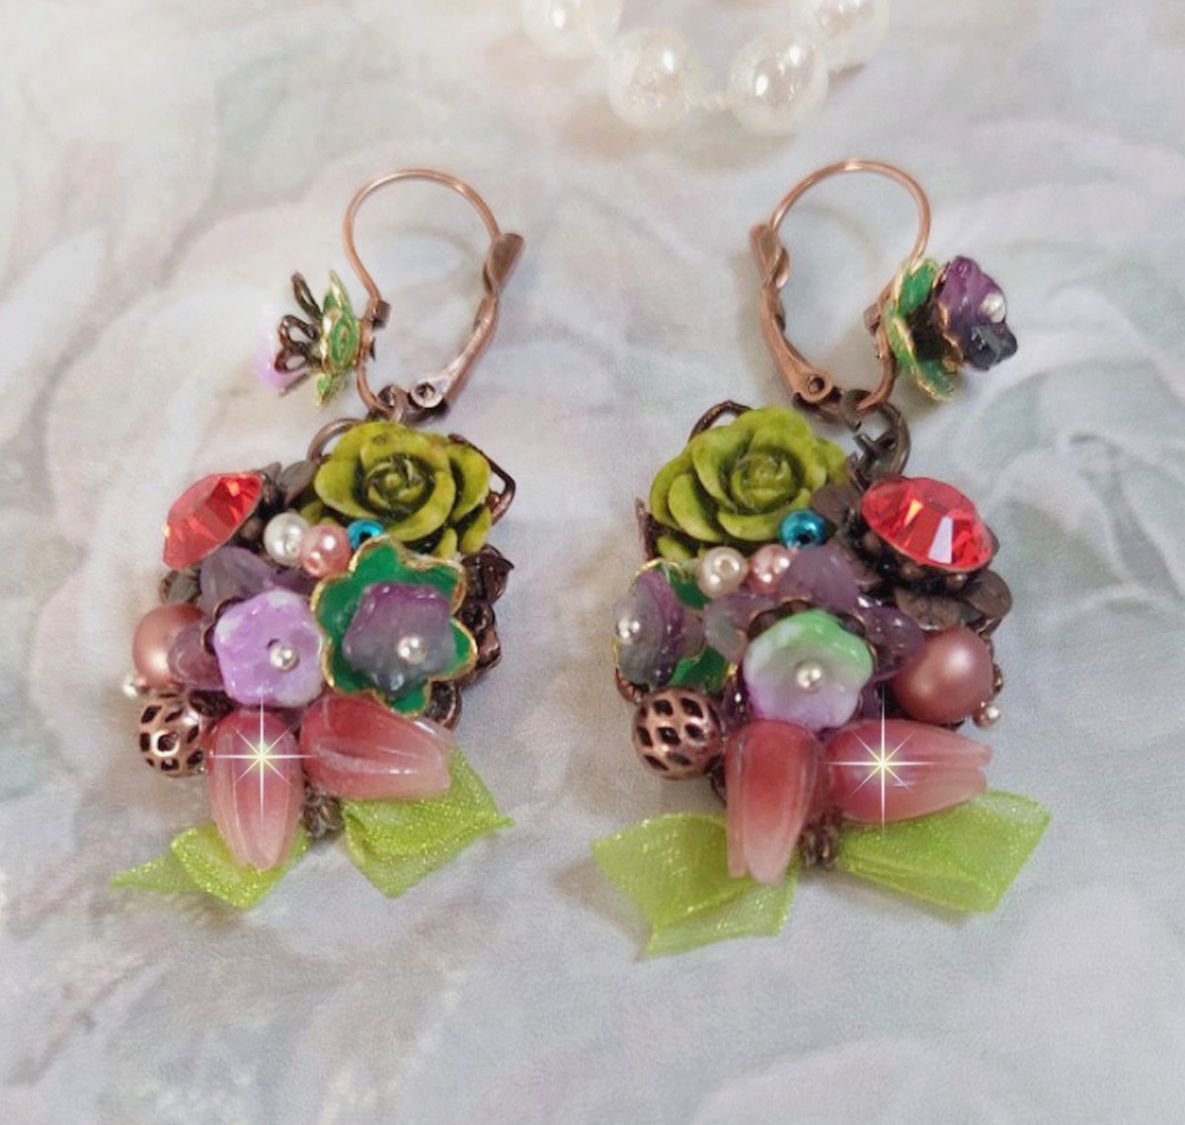 BO Fantasia de Fleurs créées avec des Cristaux, des perles rondes nacrées, des perles, clochettes en résine, en verre et du ruban Organza Anis